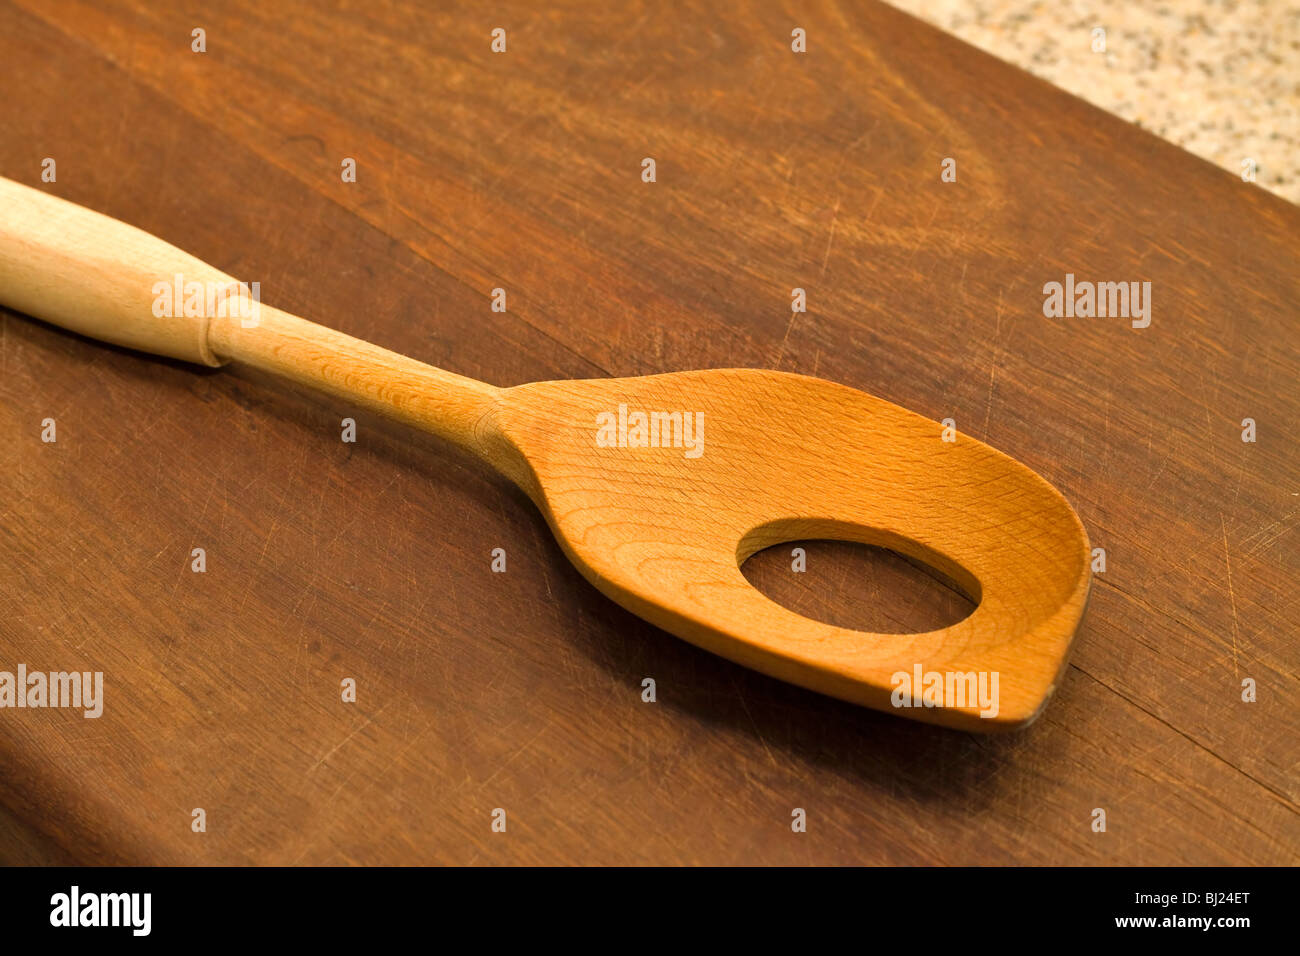 Specialized cucchiaio di legno con un foro nel recipiente Foto Stock